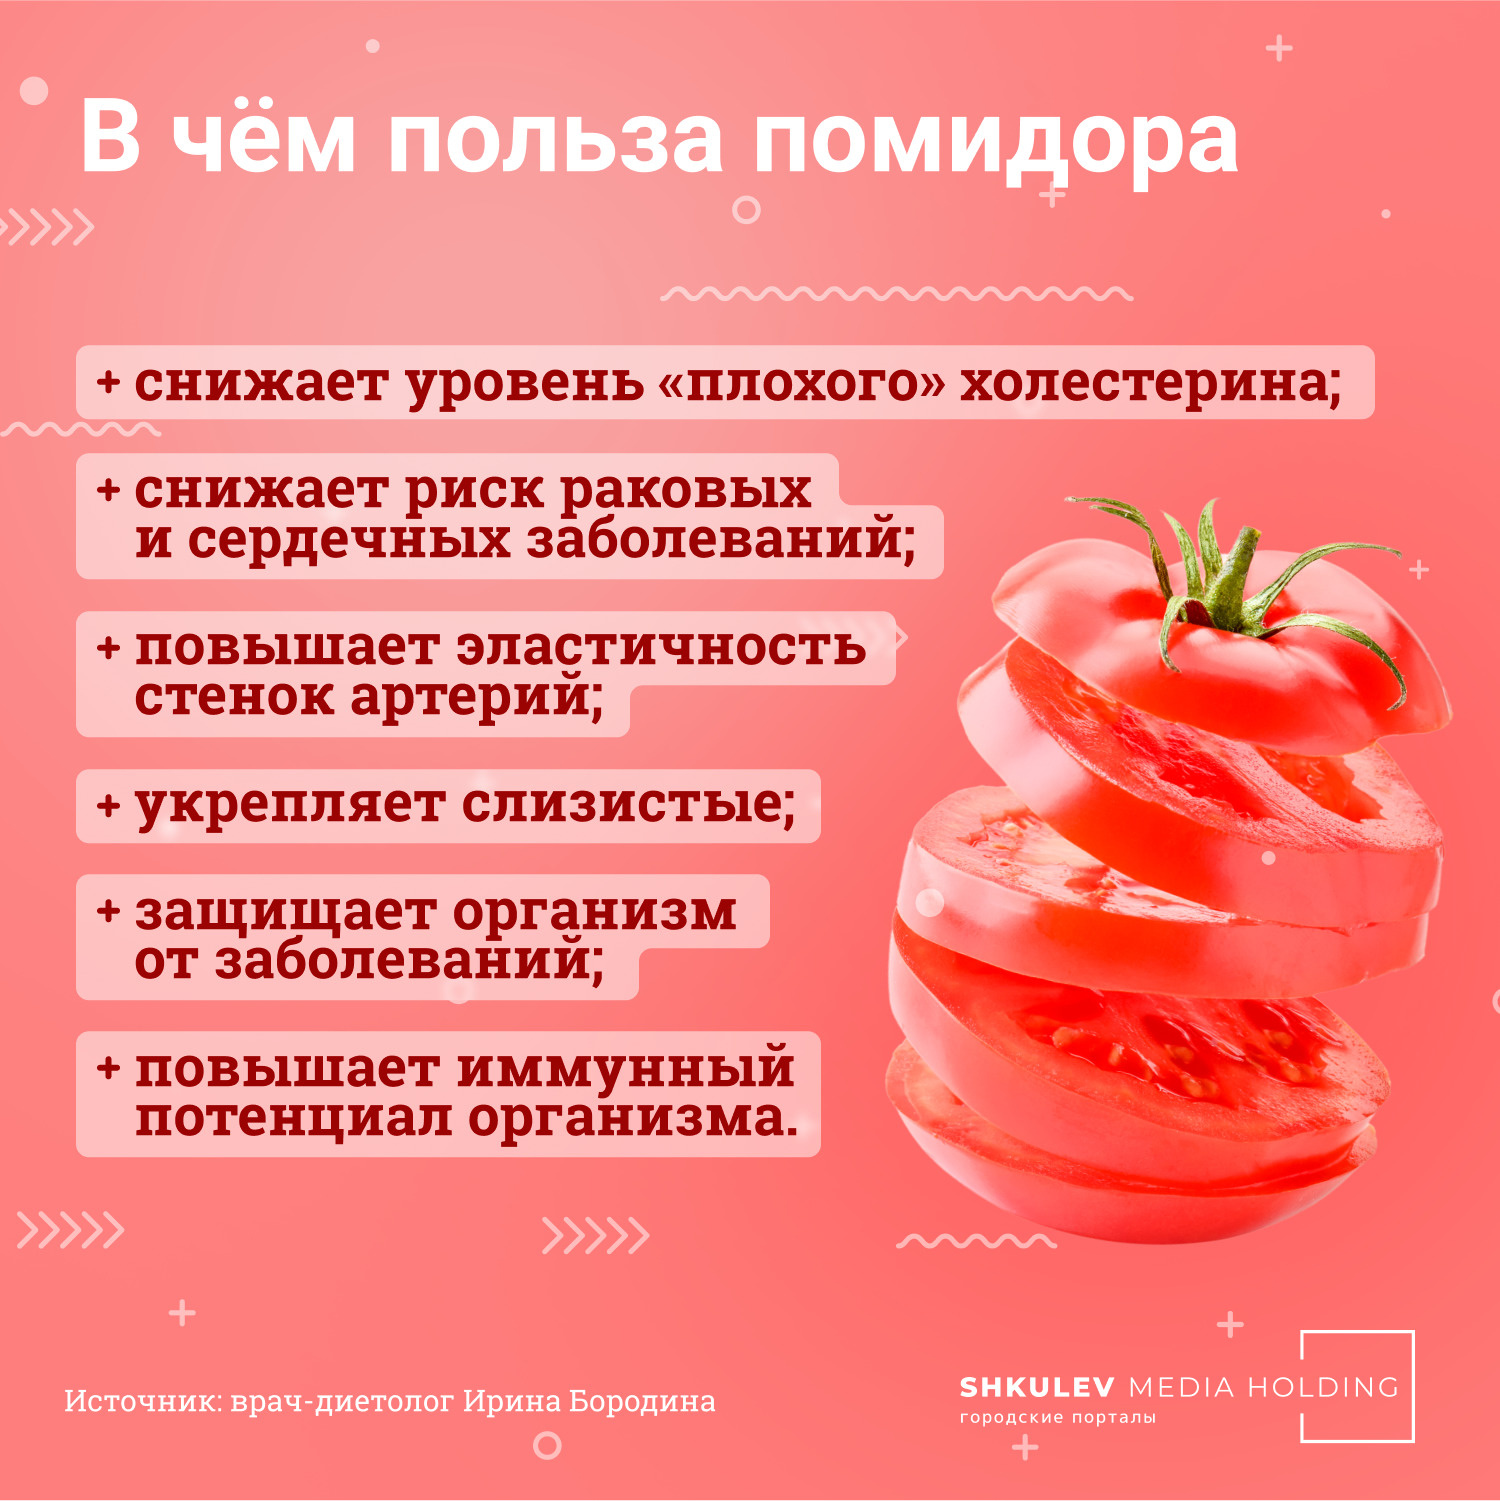 Что полезного есть в помидорах